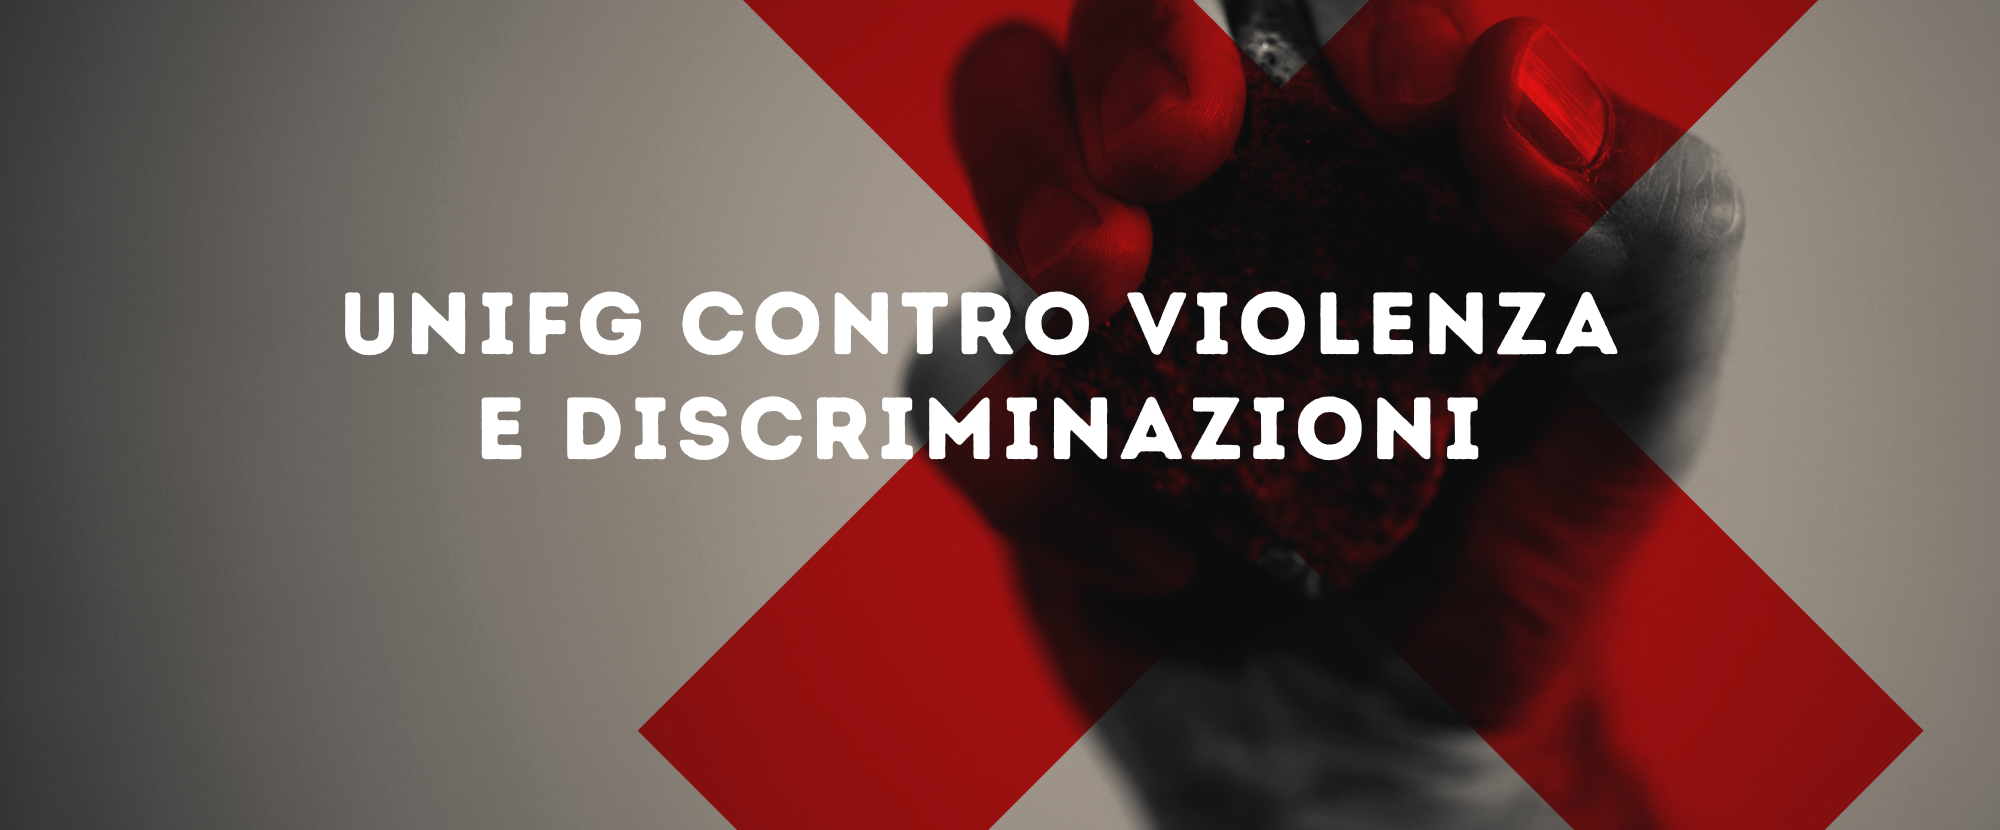 Unifg contro violenza e discriminazioni